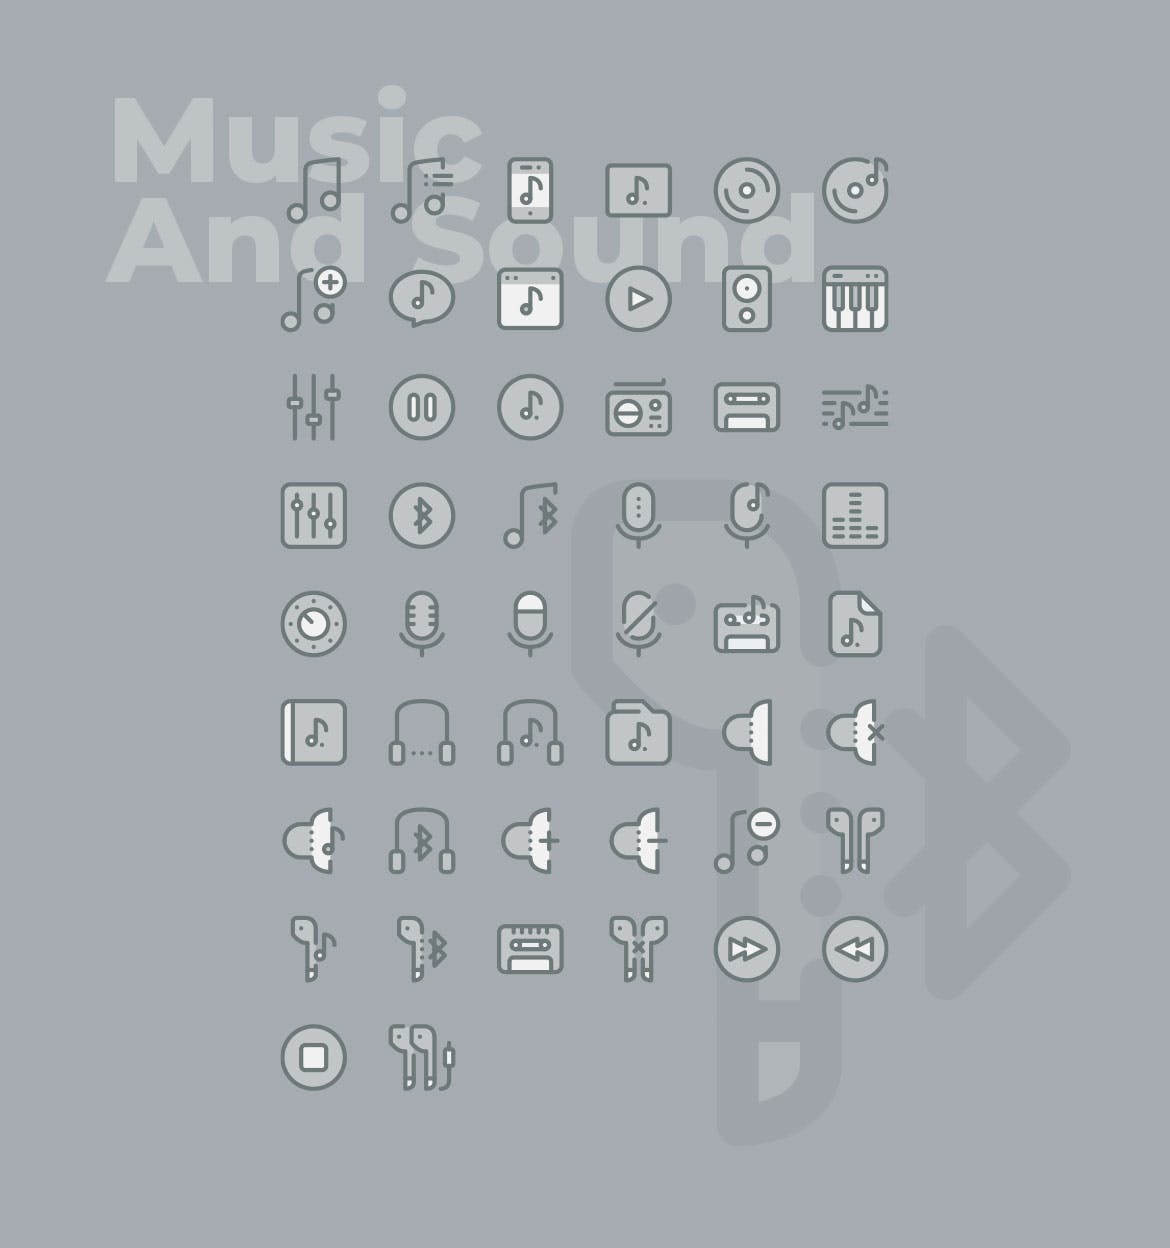 50枚音乐&声音主题矢量双色调16设计素材网精选图标 50 Music and Sound Icons  –  Two Tone Style插图(1)